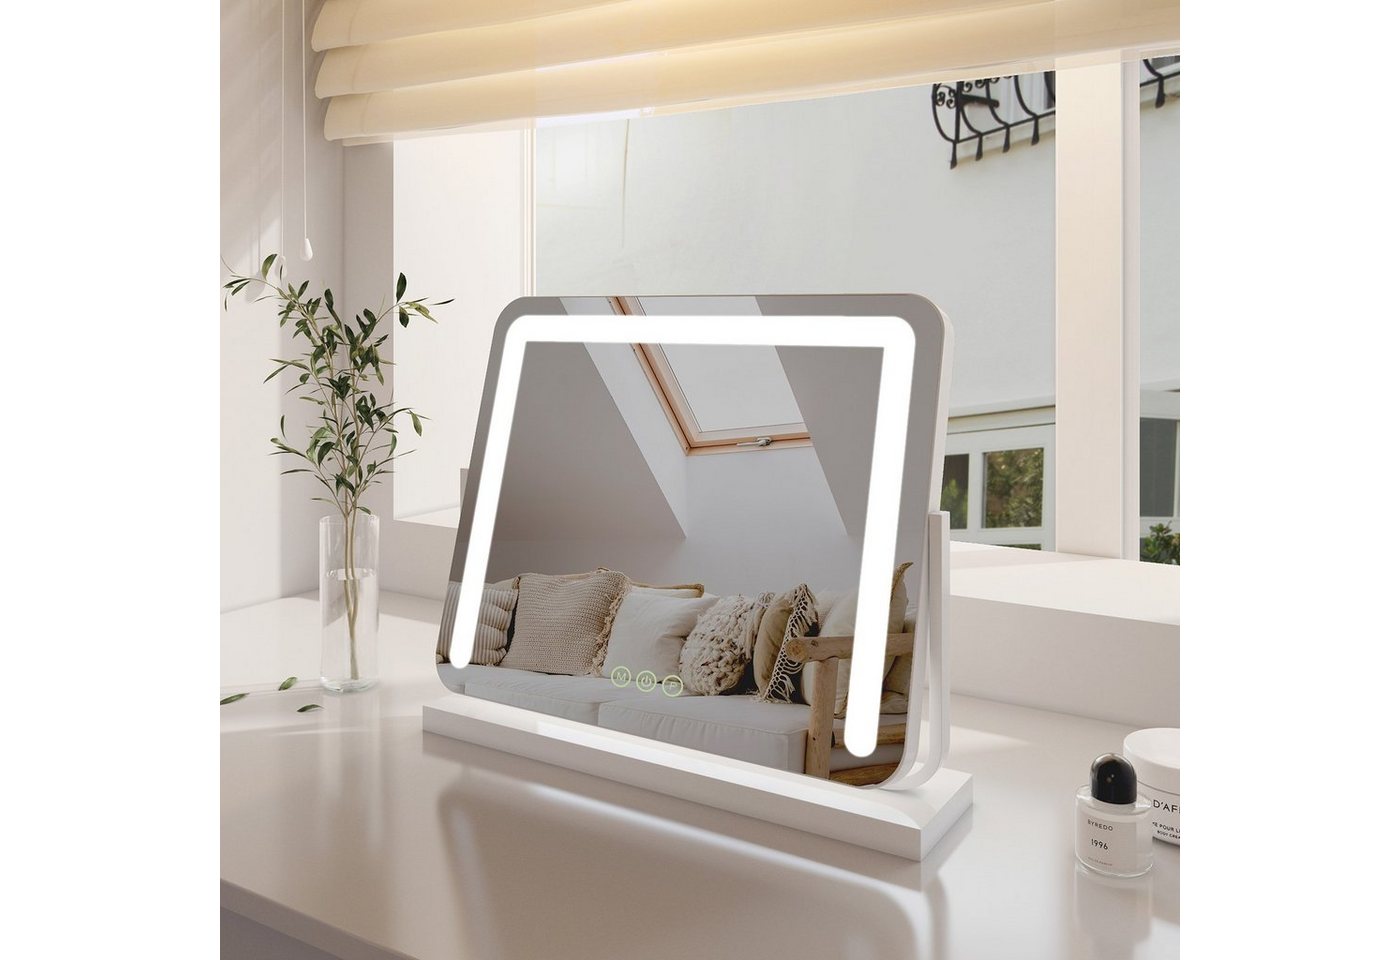 EMKE Kosmetikspiegel Schminkspiegel LED Kosmetikspiegel mit Beleuchtung Tischspiegel, mit Touch, 3 Lichtfarben Dimmbar, Memory-Funktion, 360° Drehbar von EMKE